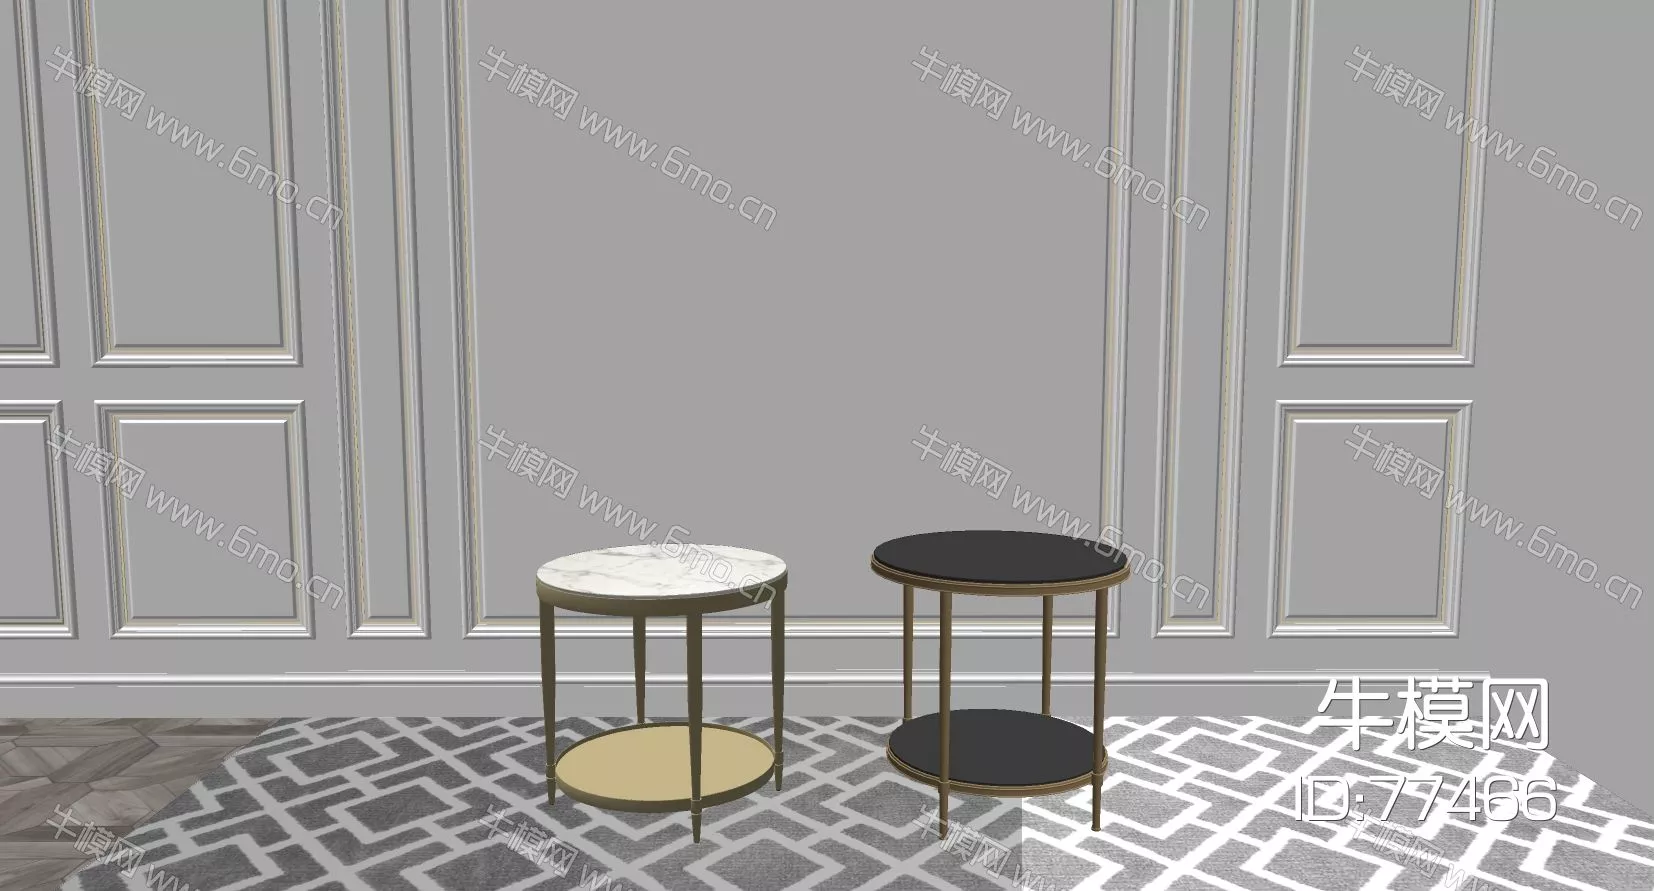 NORDIC SIDE TABLE - SKETCHUP 3D MODEL - ENSCAPE - 77466